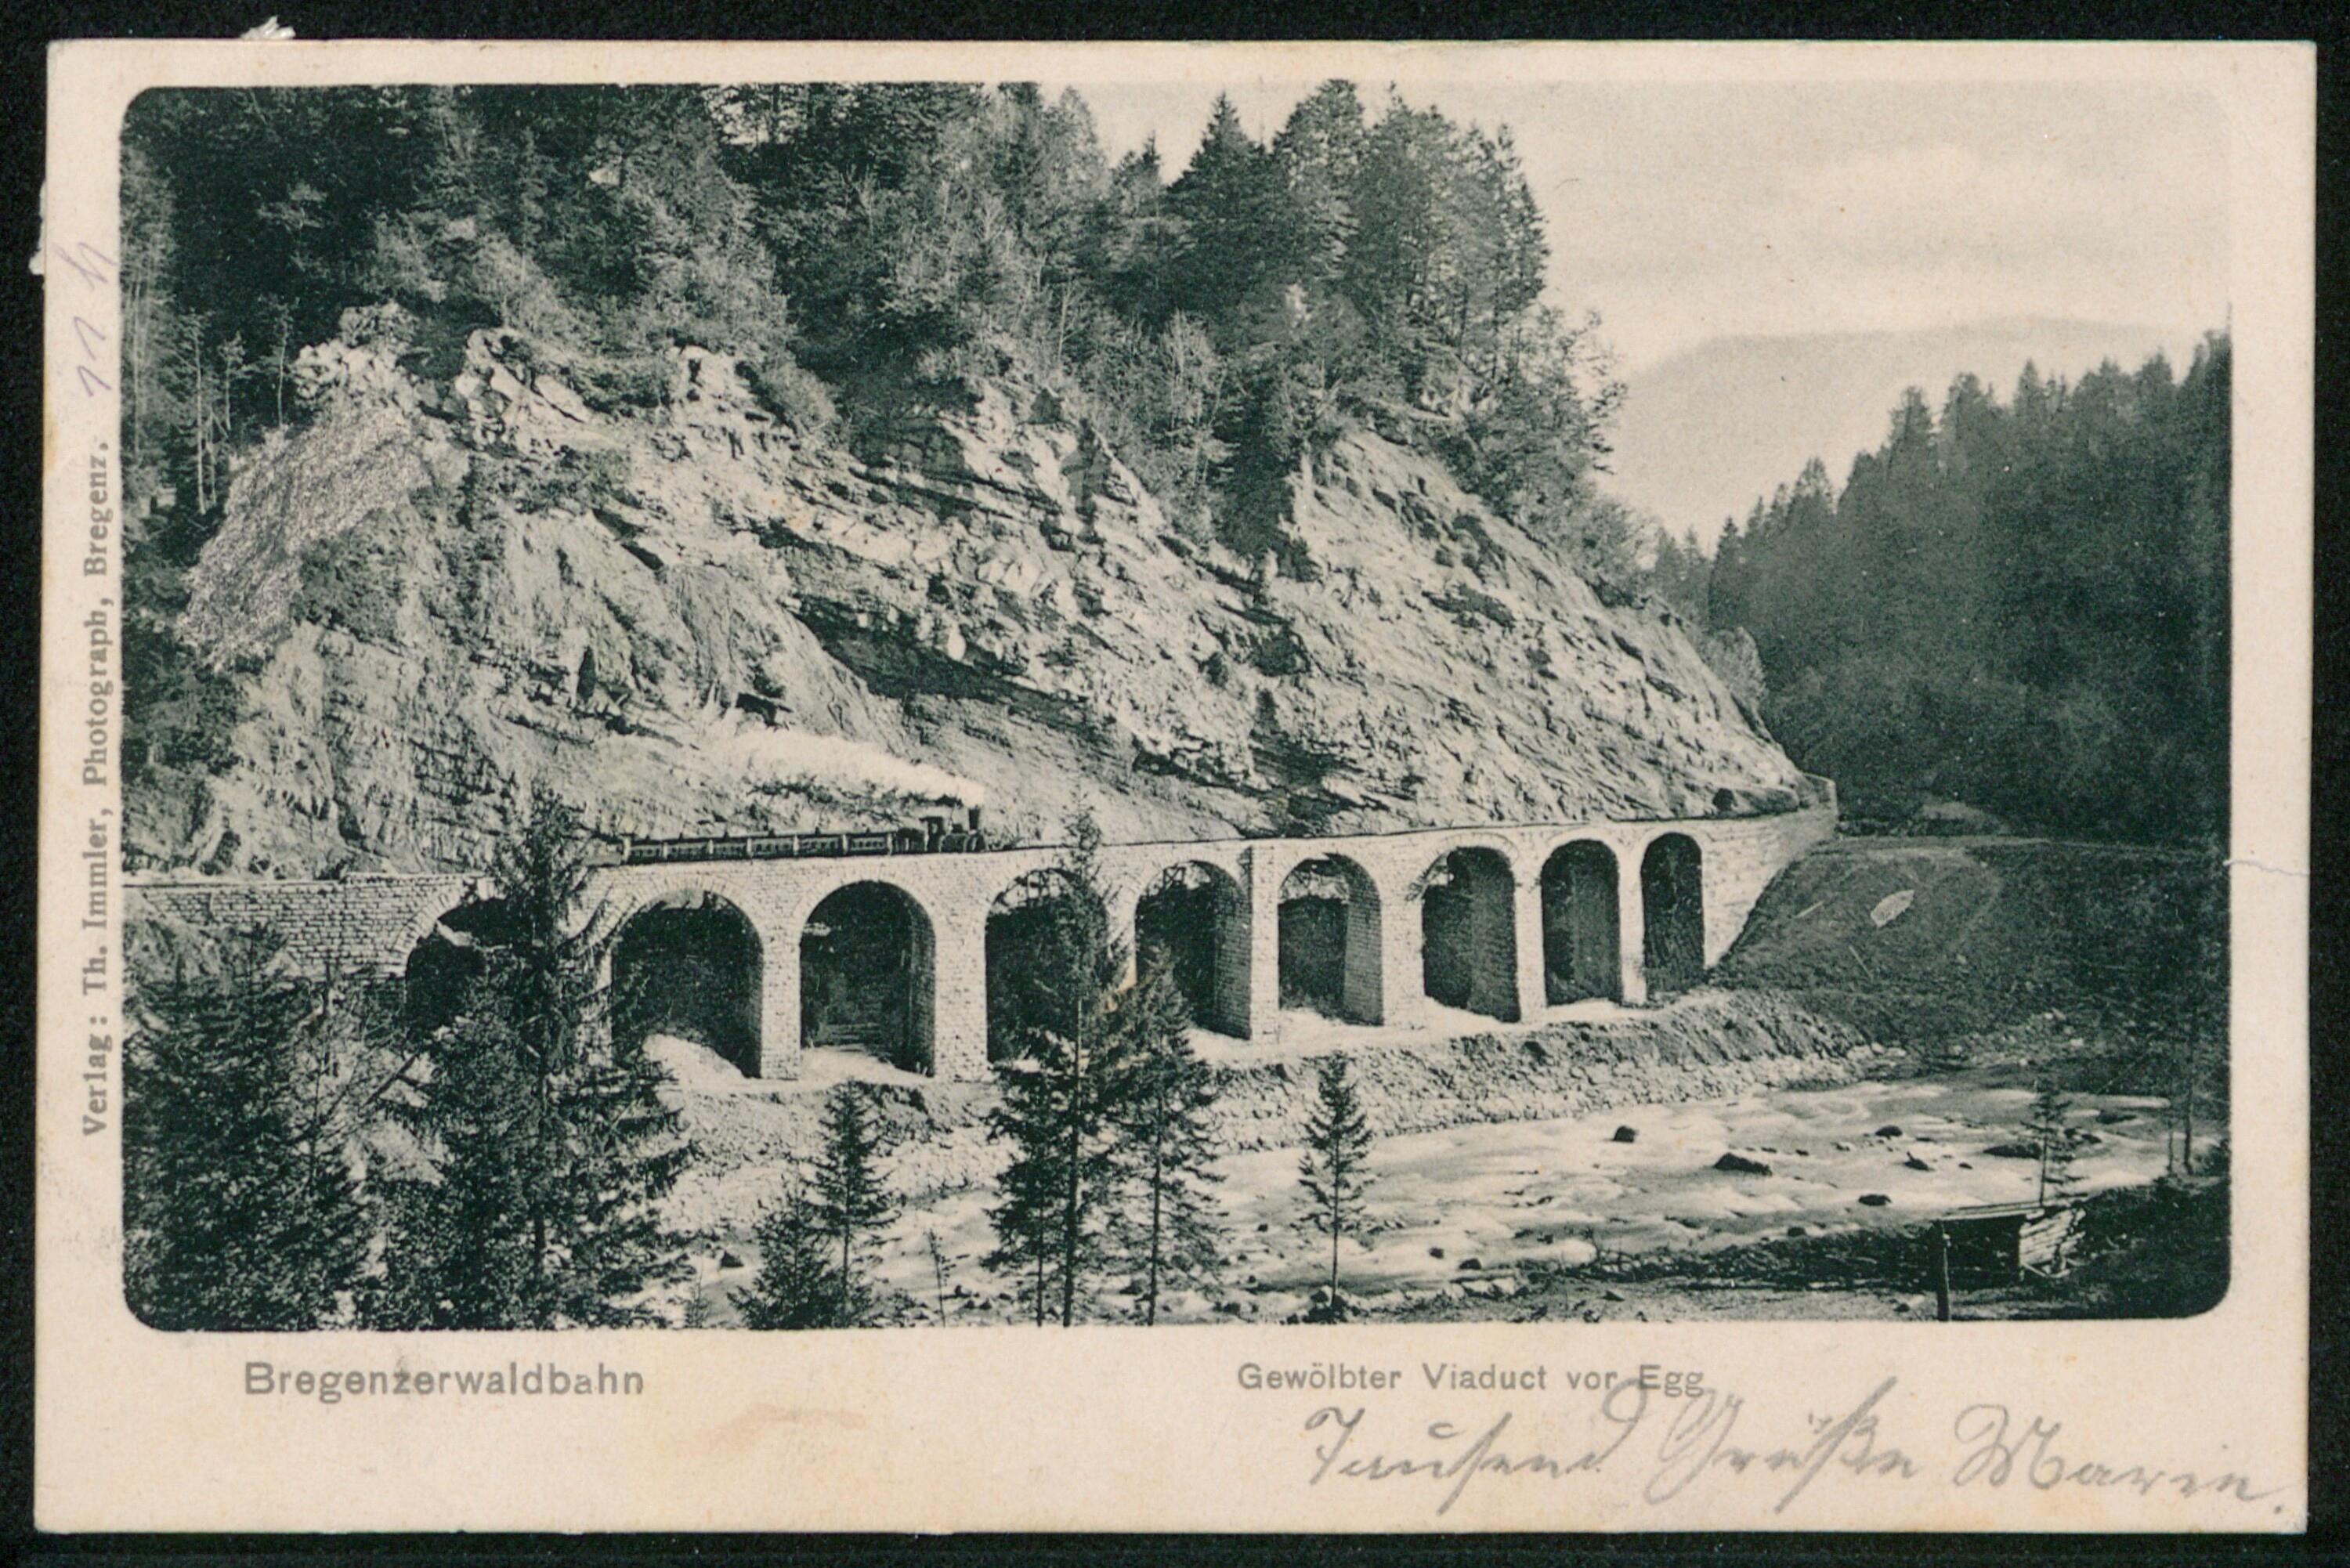 Bregenzerwaldbahn Gewölbter Viaduct vor Egg></div>


    <hr>
    <div class=